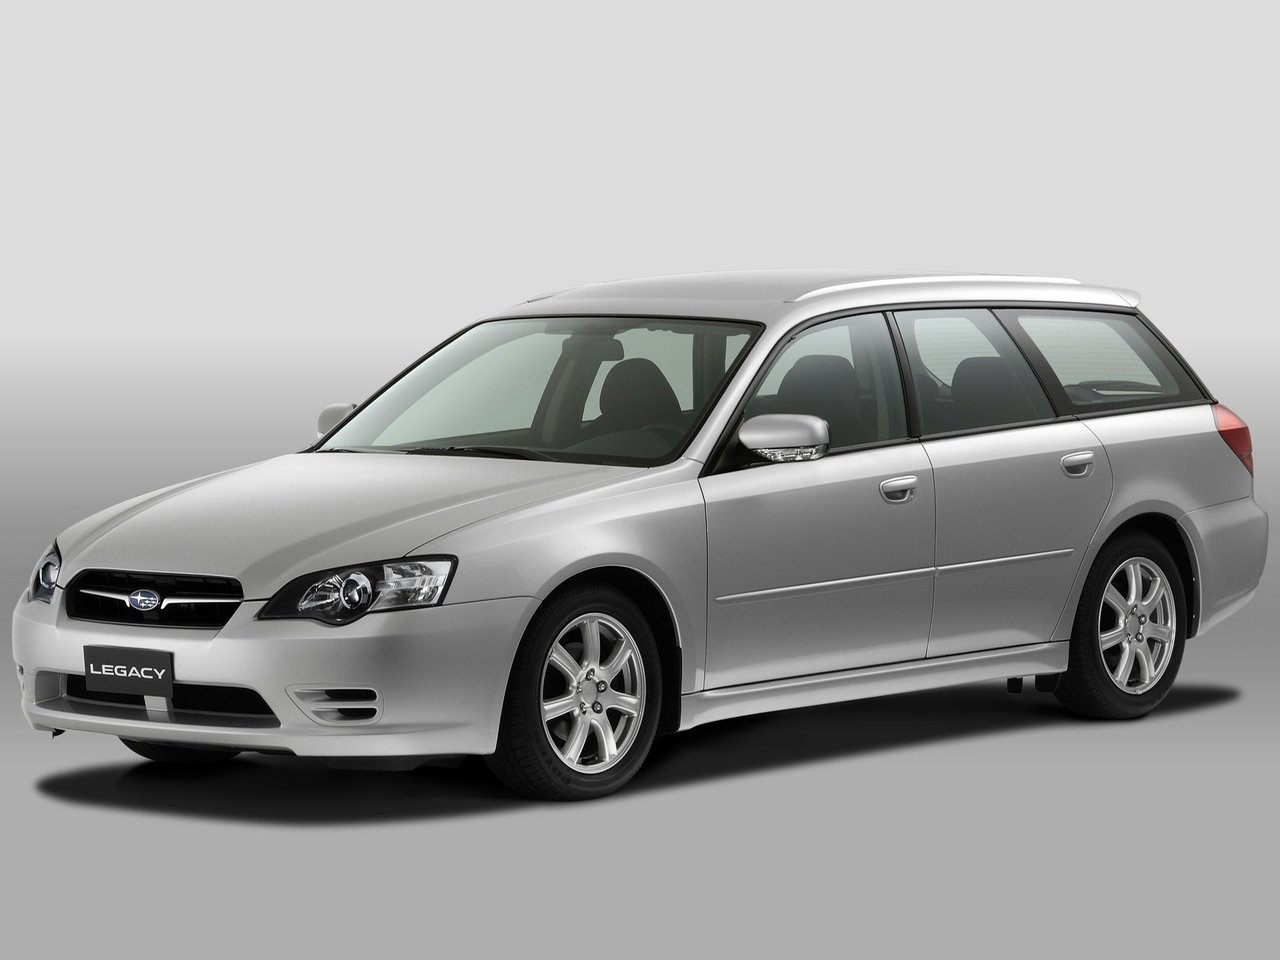 Расход газа семи комплектаций универсала пять дверей Subaru Legacy. Разница стоимости заправки газом и бензином. Автономный пробег до и после установки ГБО.